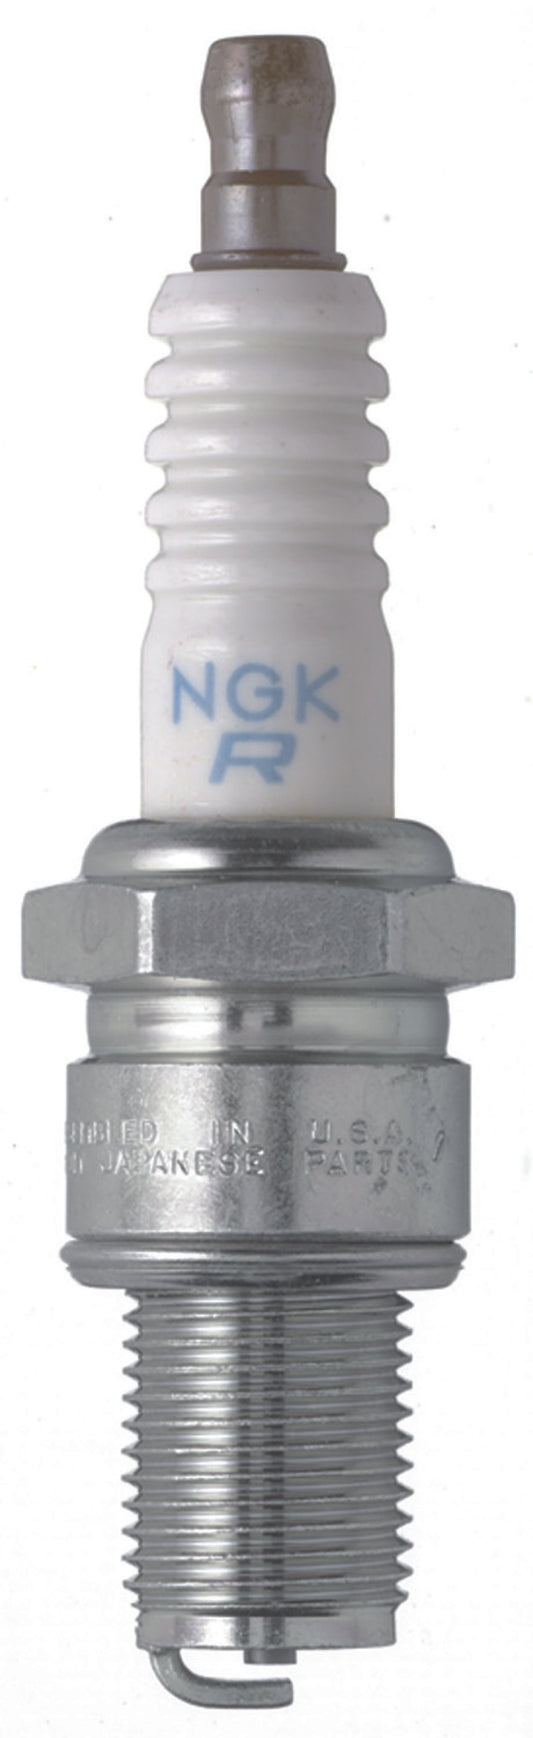 NGK Standard Spark Plug Box of 4 (BR8ES-11)